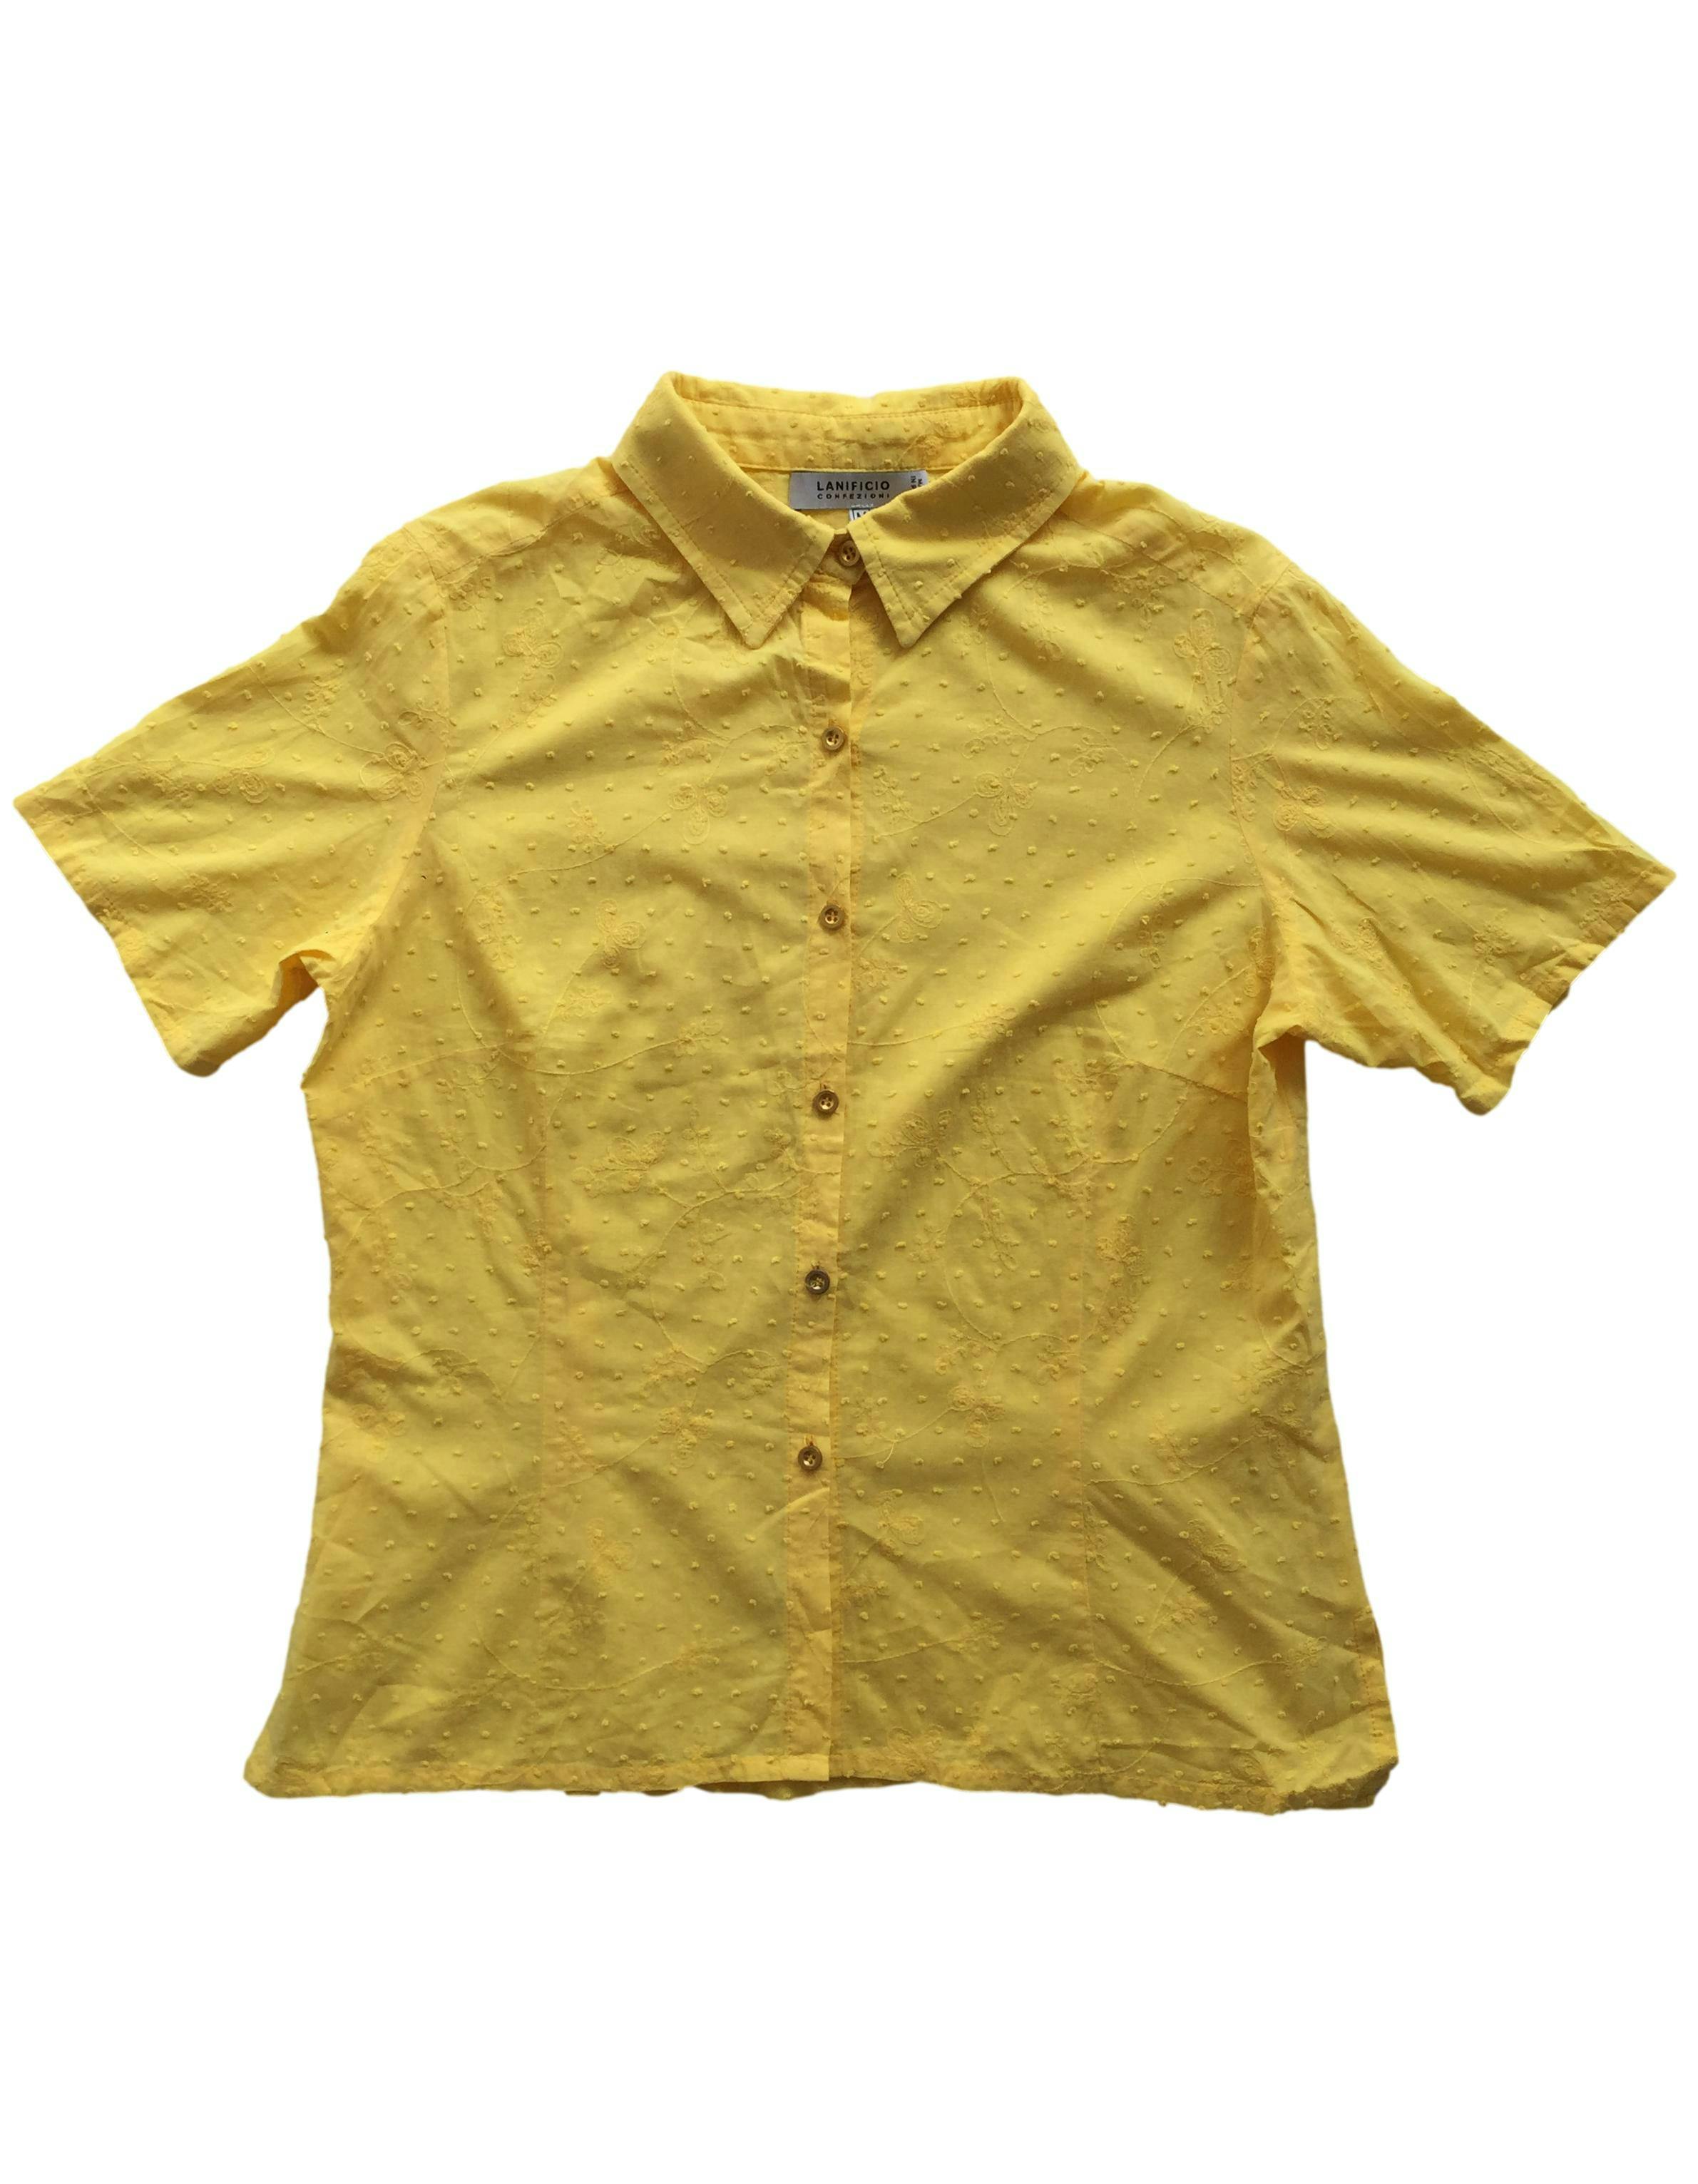 Blusa amarilla, bordado de flores y textura de bolitas, botones delanteros. Busto: 104cm, Largo: 60cm